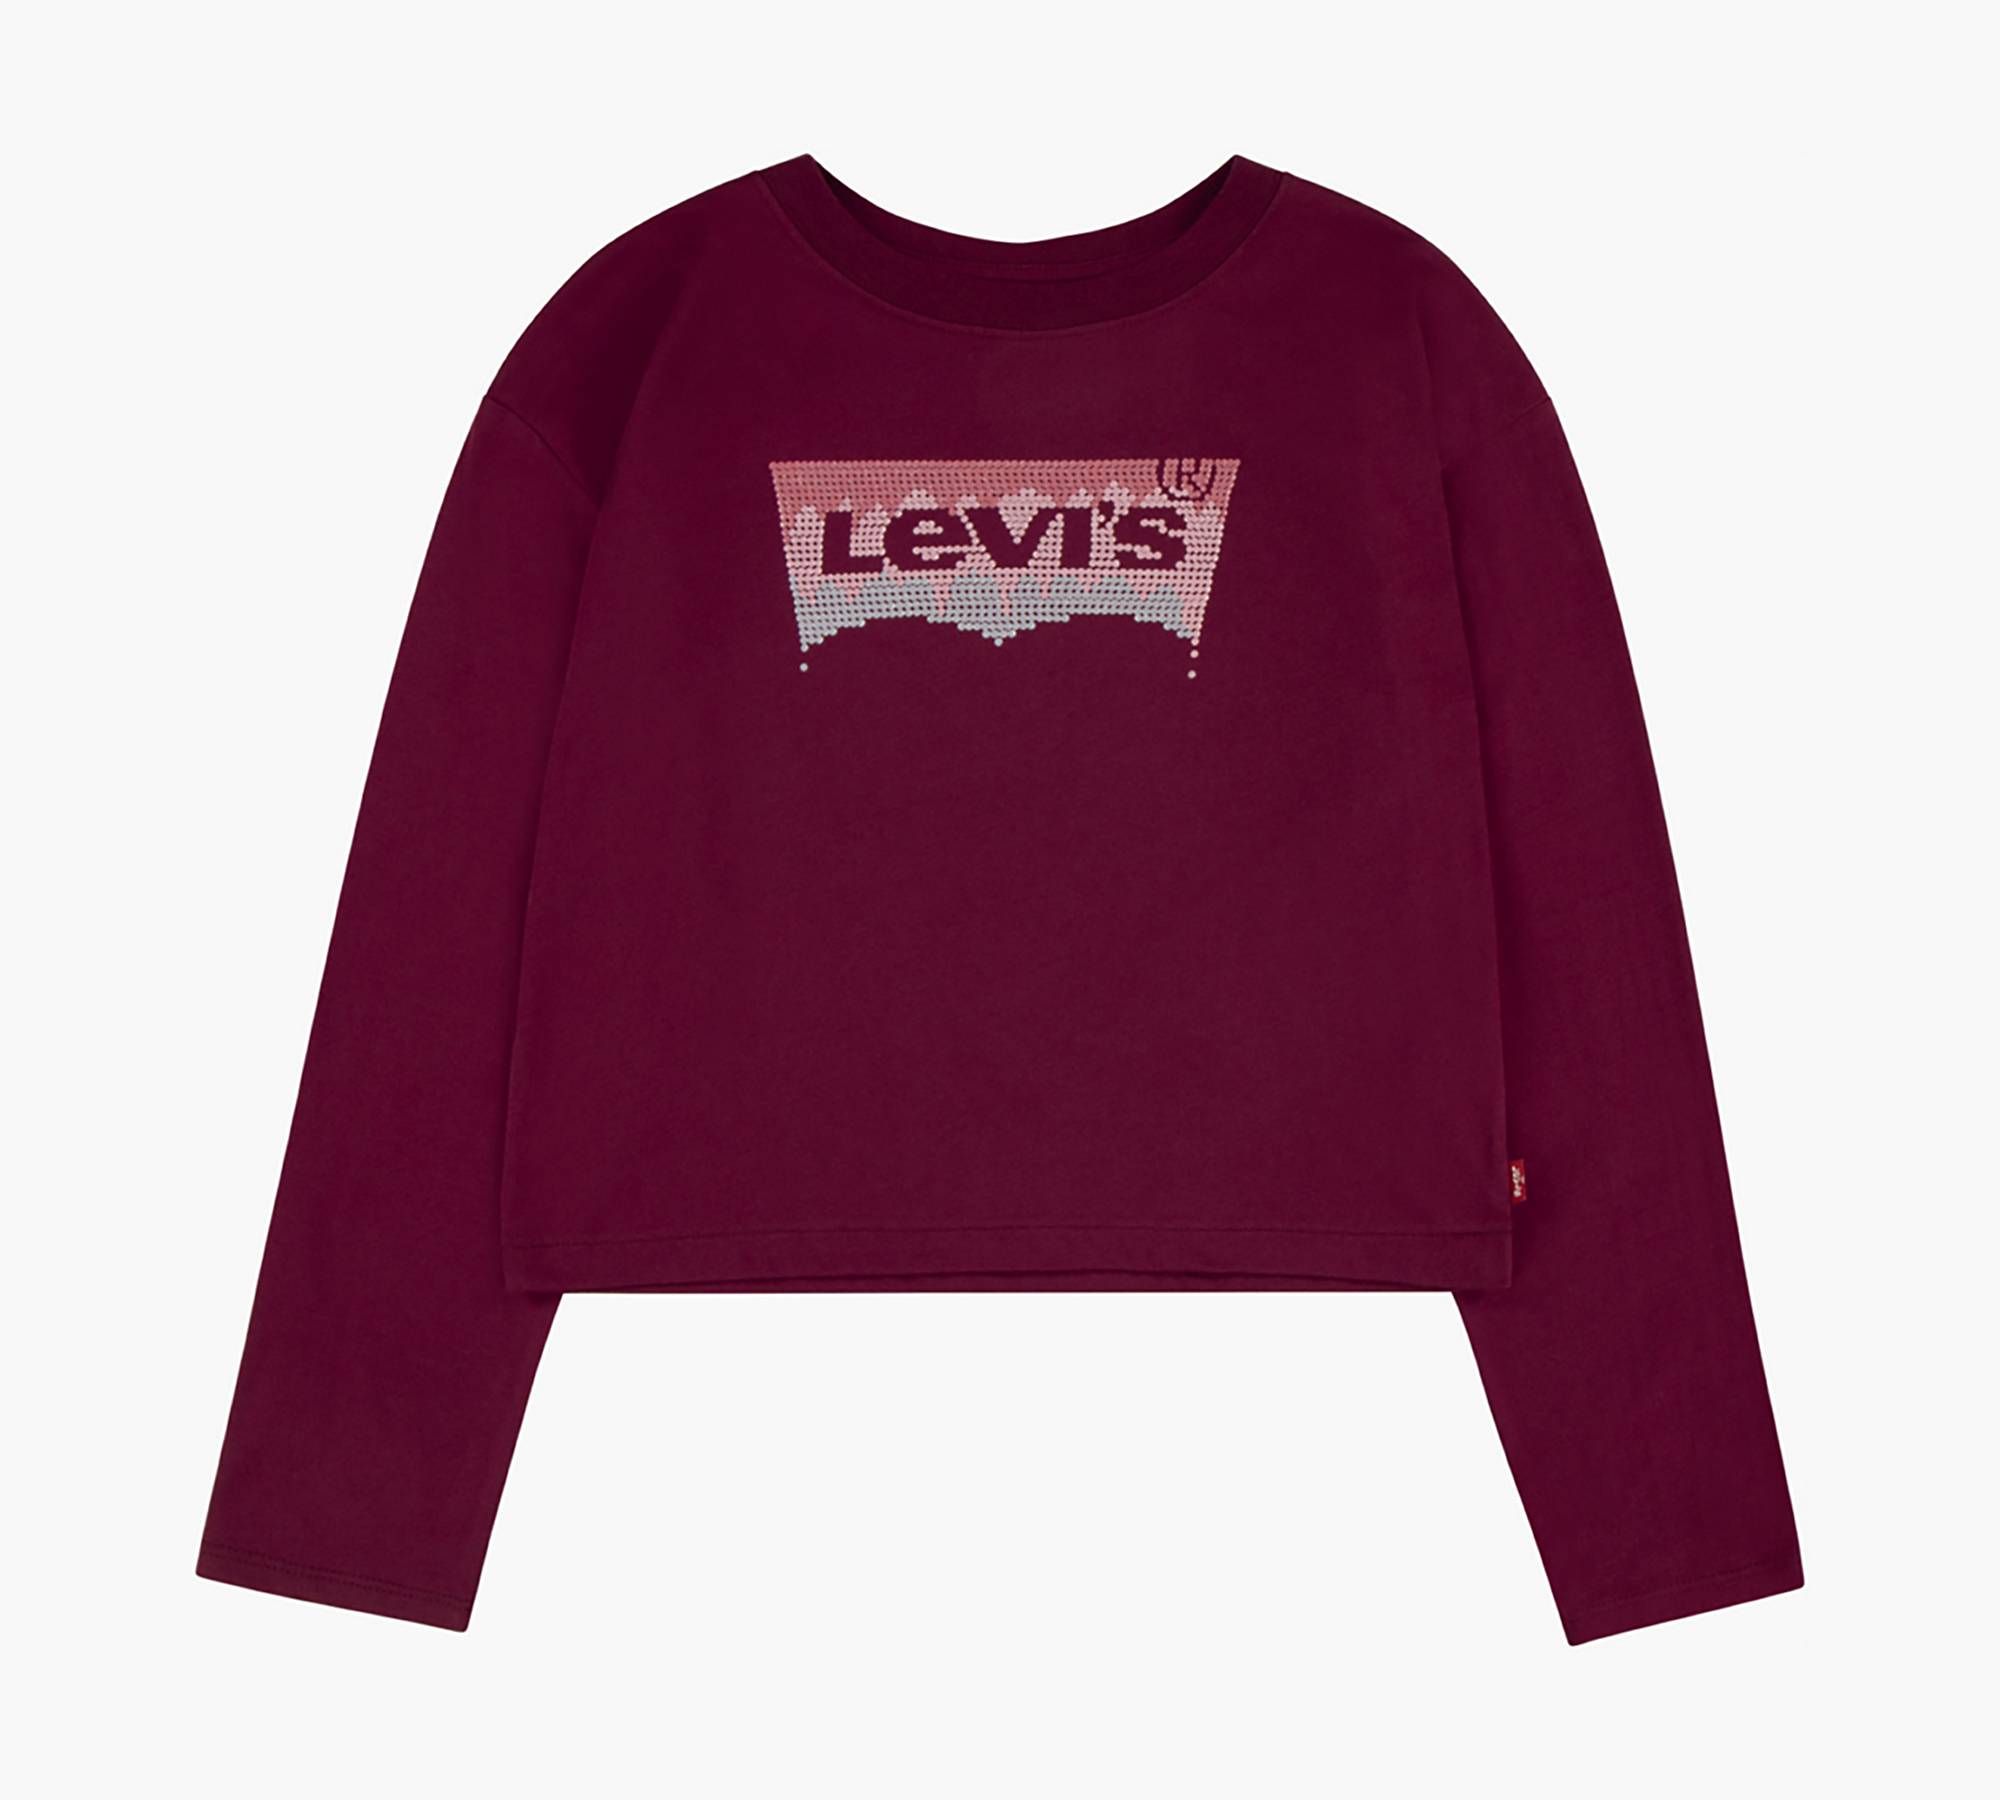 Levi's® Glitter Batwing Logo Long Sleeve T-Shirt Little Girls 4-6x 1